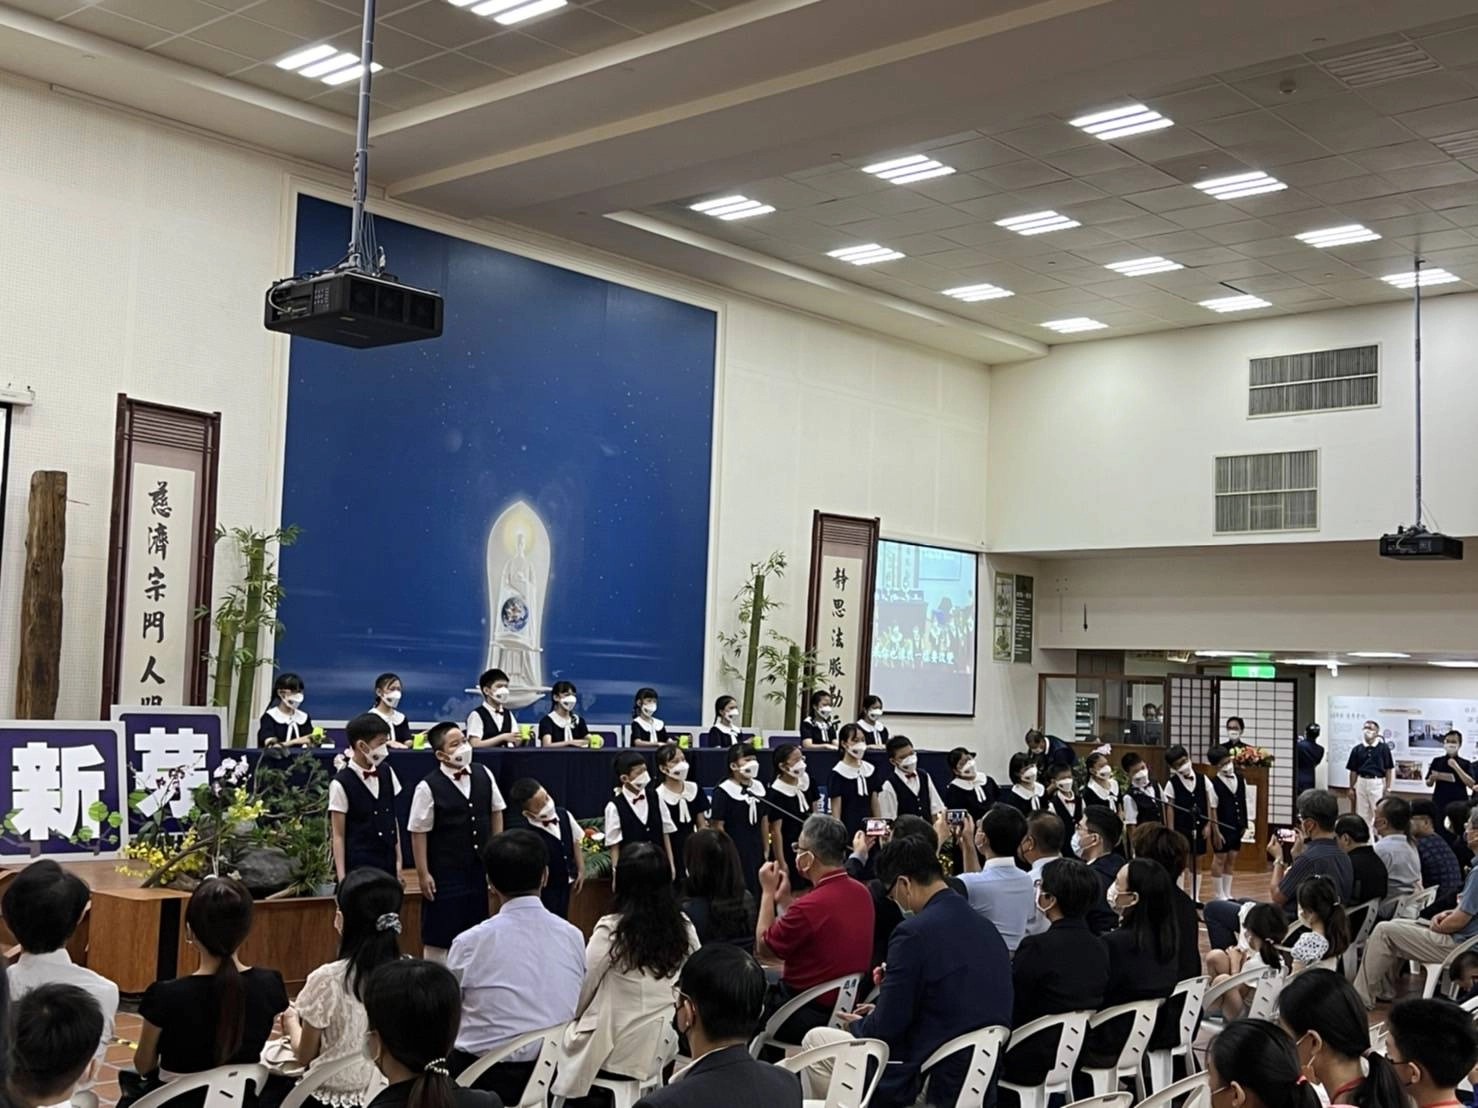 高雄慈濟兒童合唱團表演為新芽頒獎典禮表演。